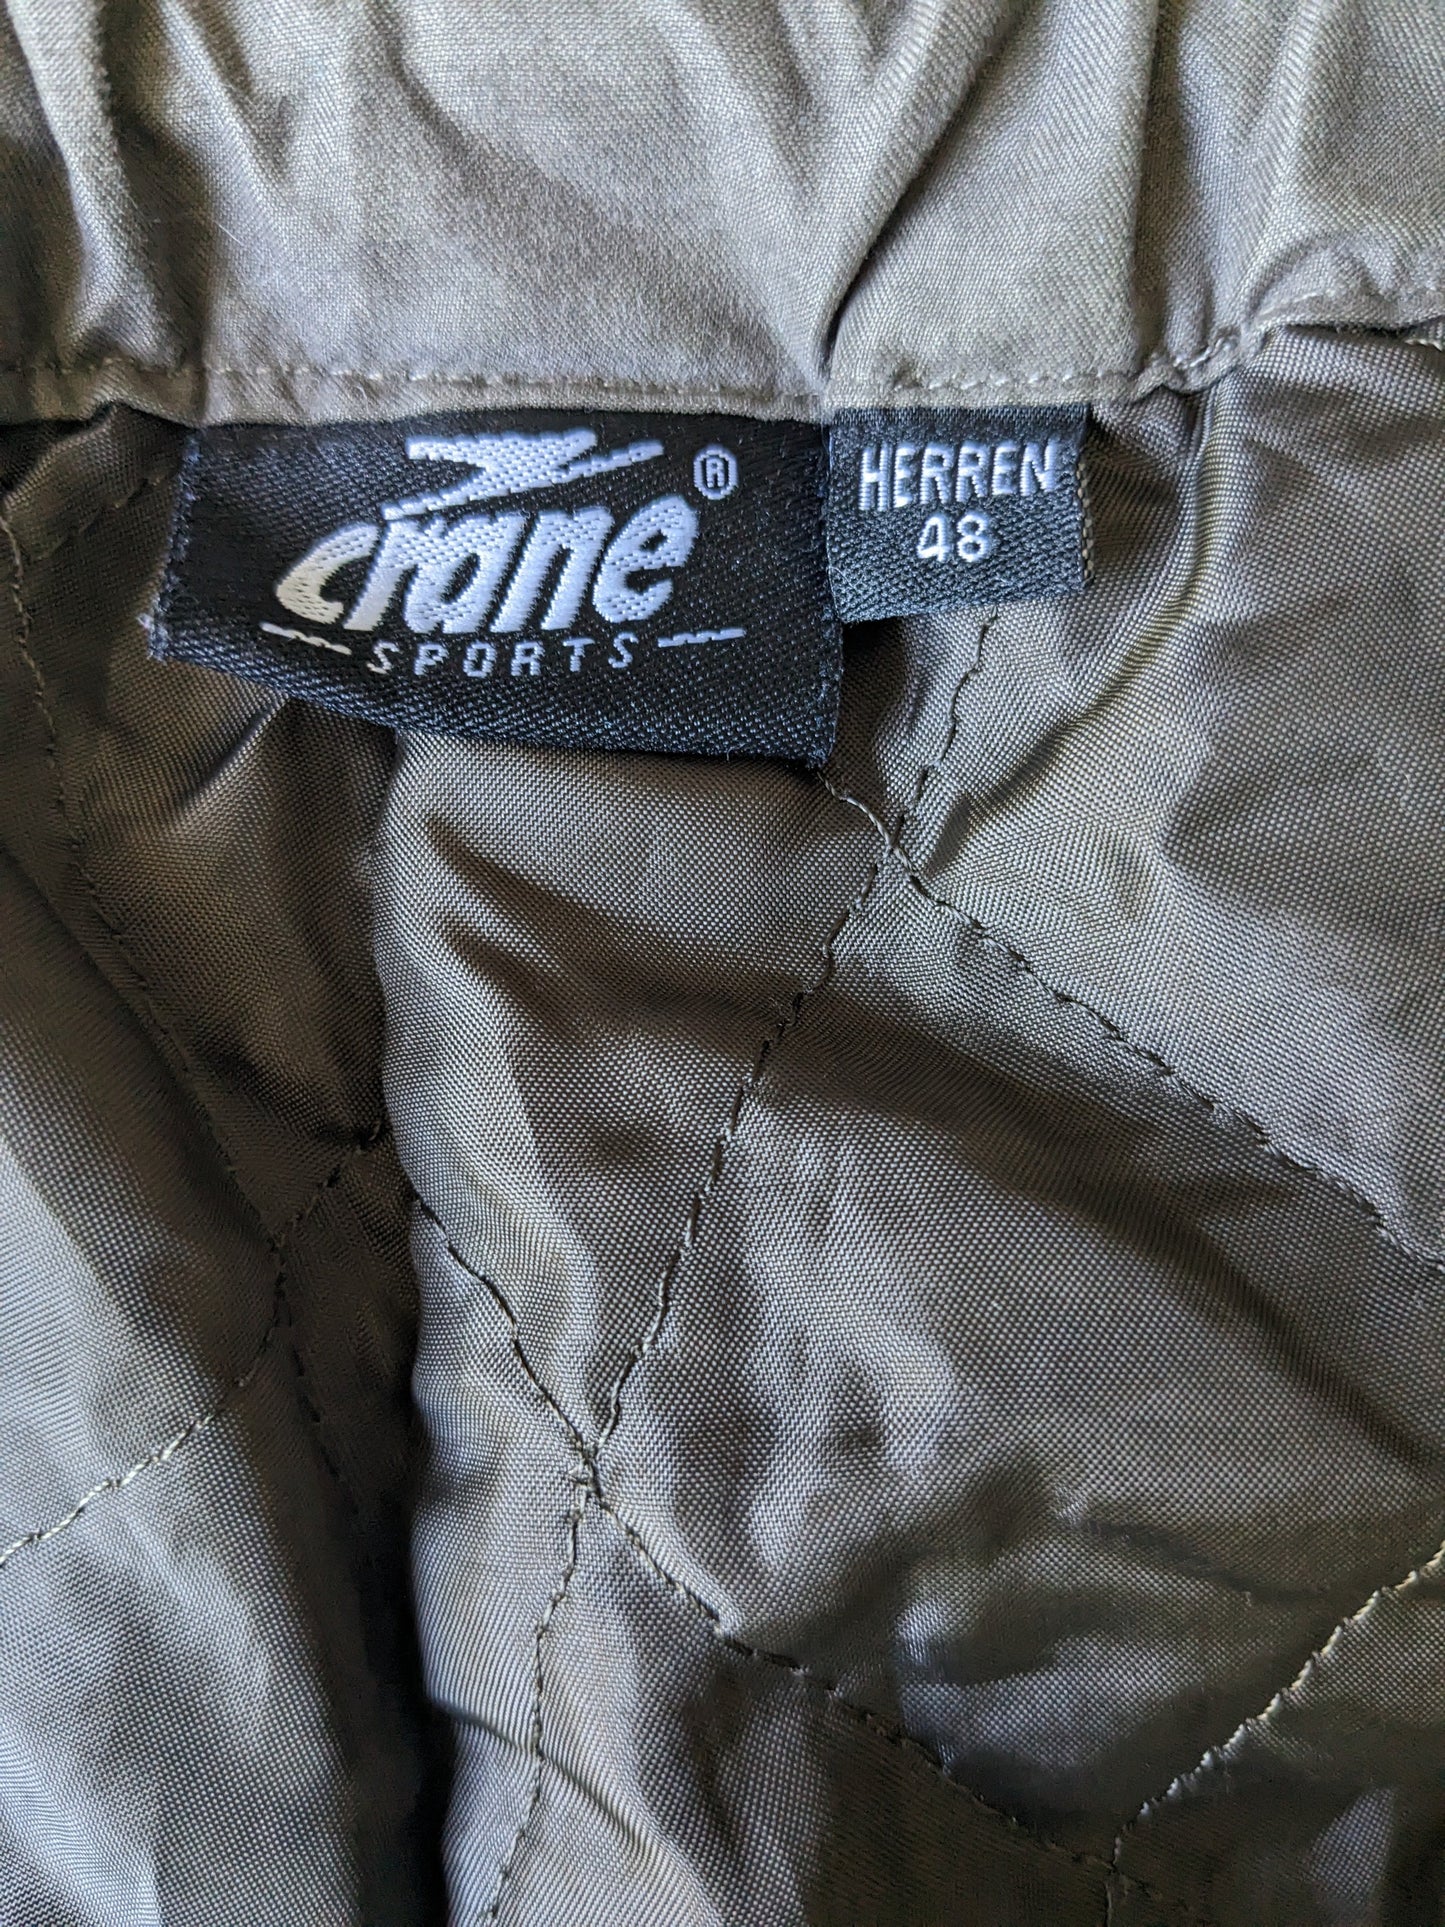 Crane Sports Thermo / Pantalones alineados. Cintura ajustable. Verde color. Tamaño 48 / S.